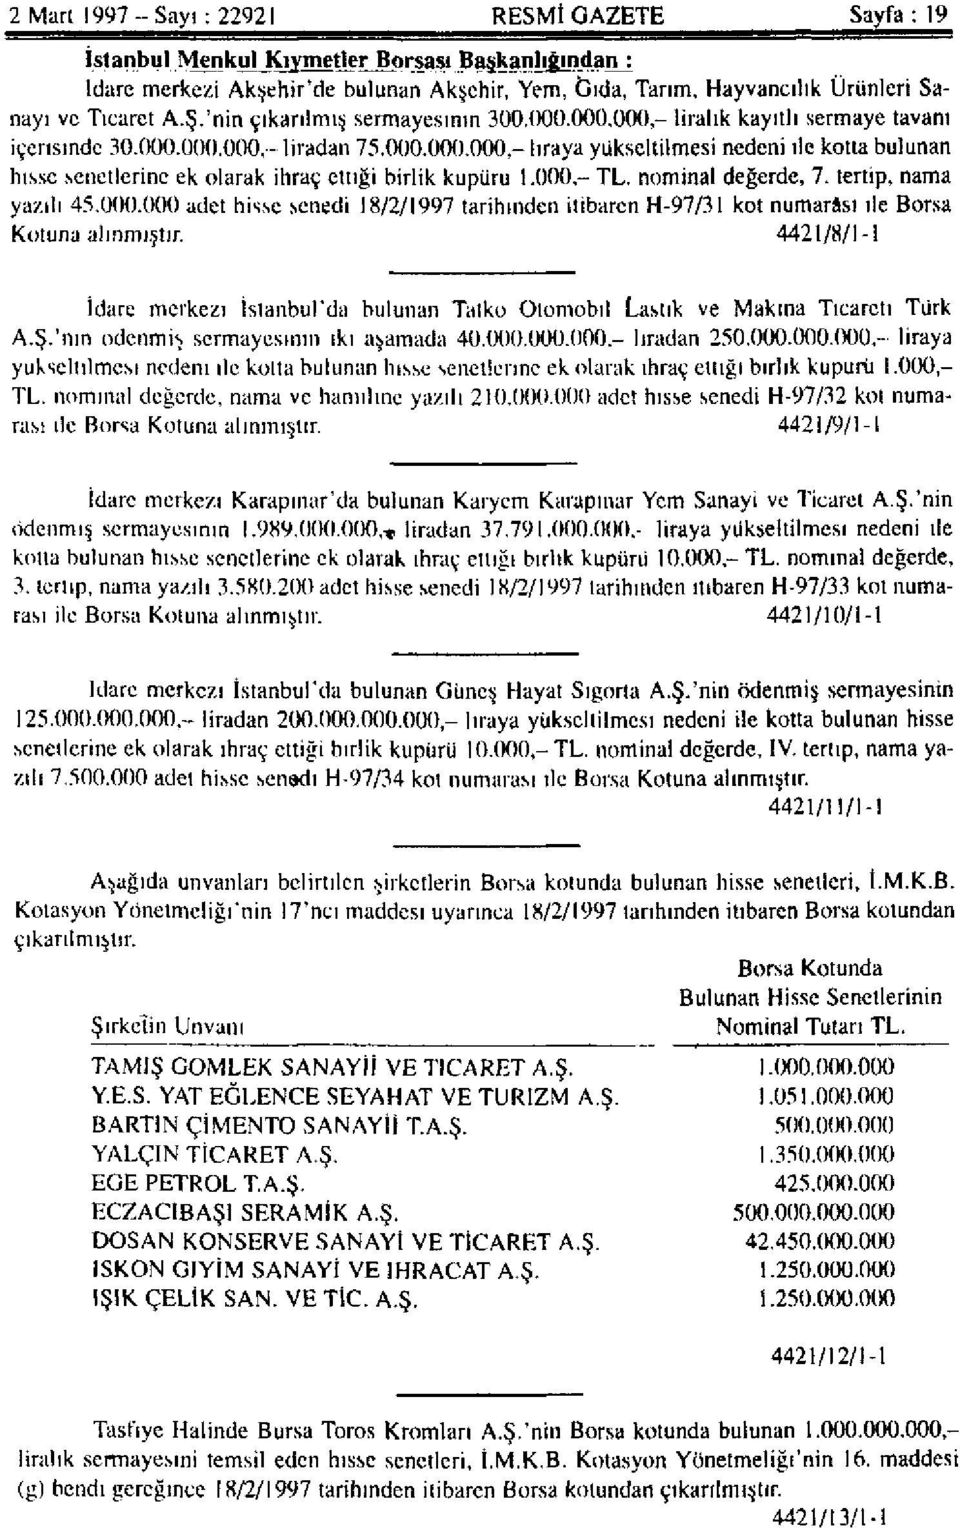 000 - TL. nominal değerde, 7. tertip, nama yazılı 45.000.000 adet his.se senedi 18/2/1997 tarihinden itibaren H-97/31 kot numarası ile Borsa Kotuna alınmıştır.